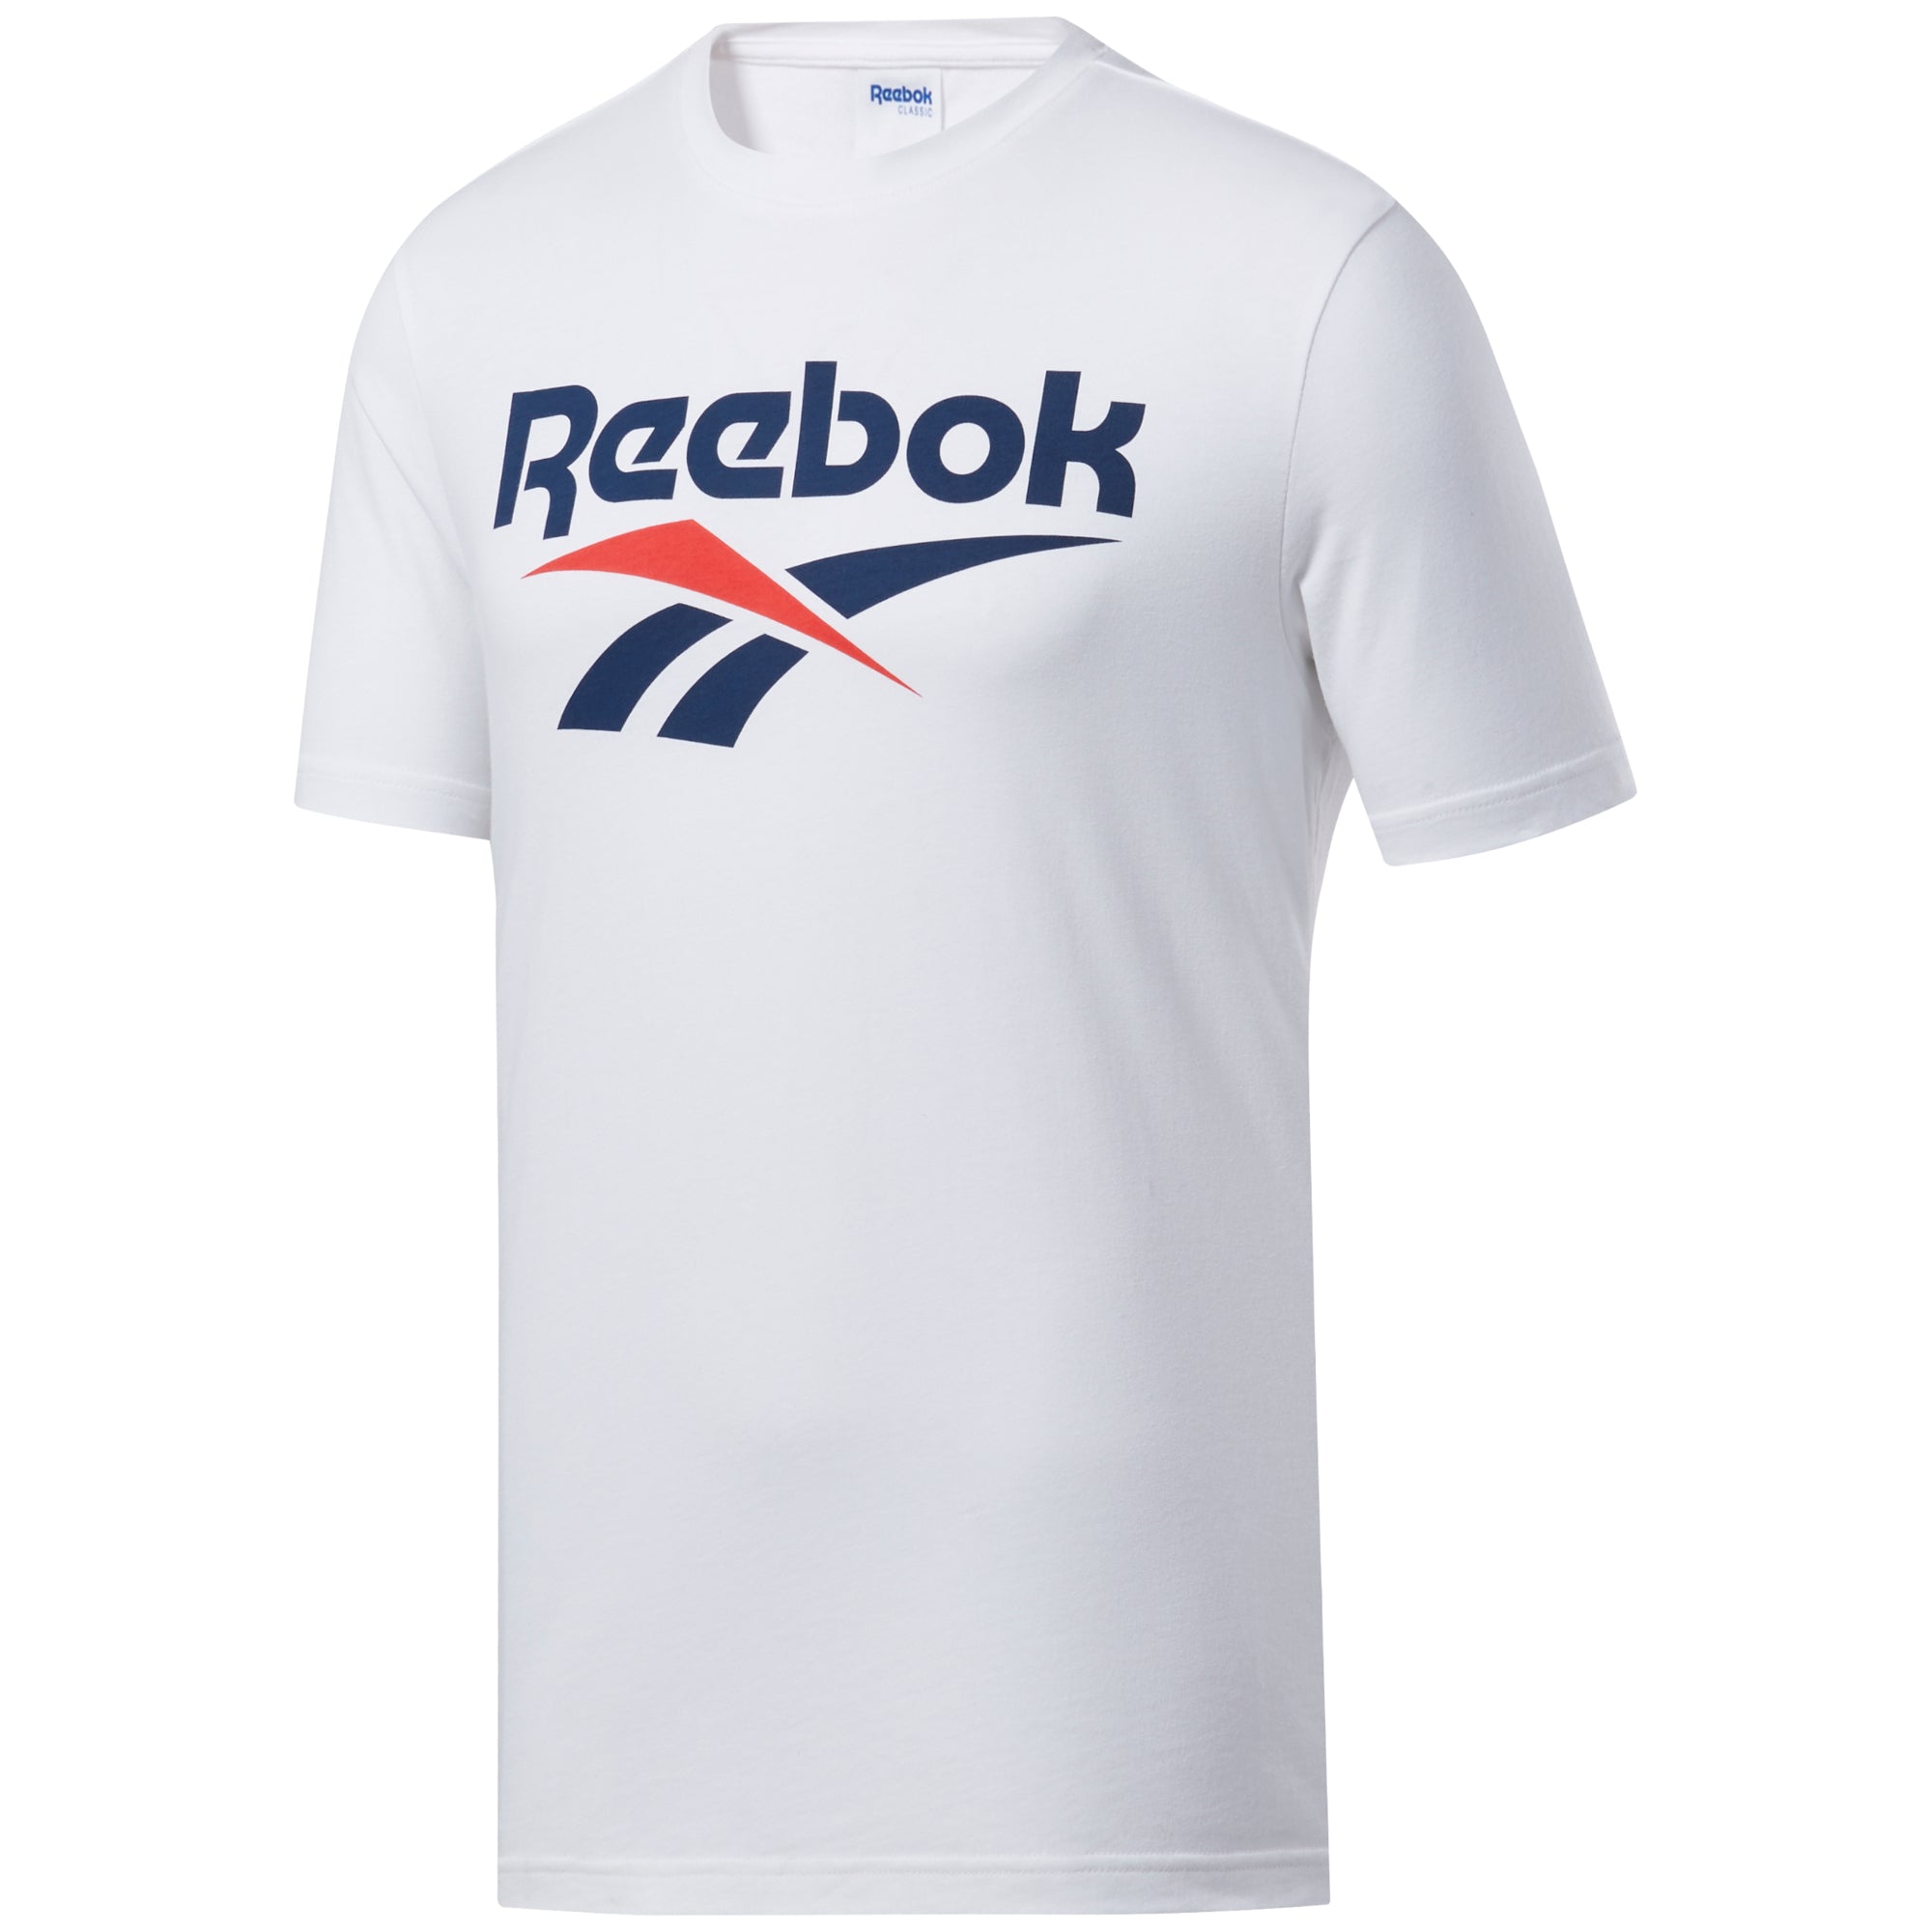 Reebok Ladies Clothing - Small Logo Bra - XS / Aqua Dust